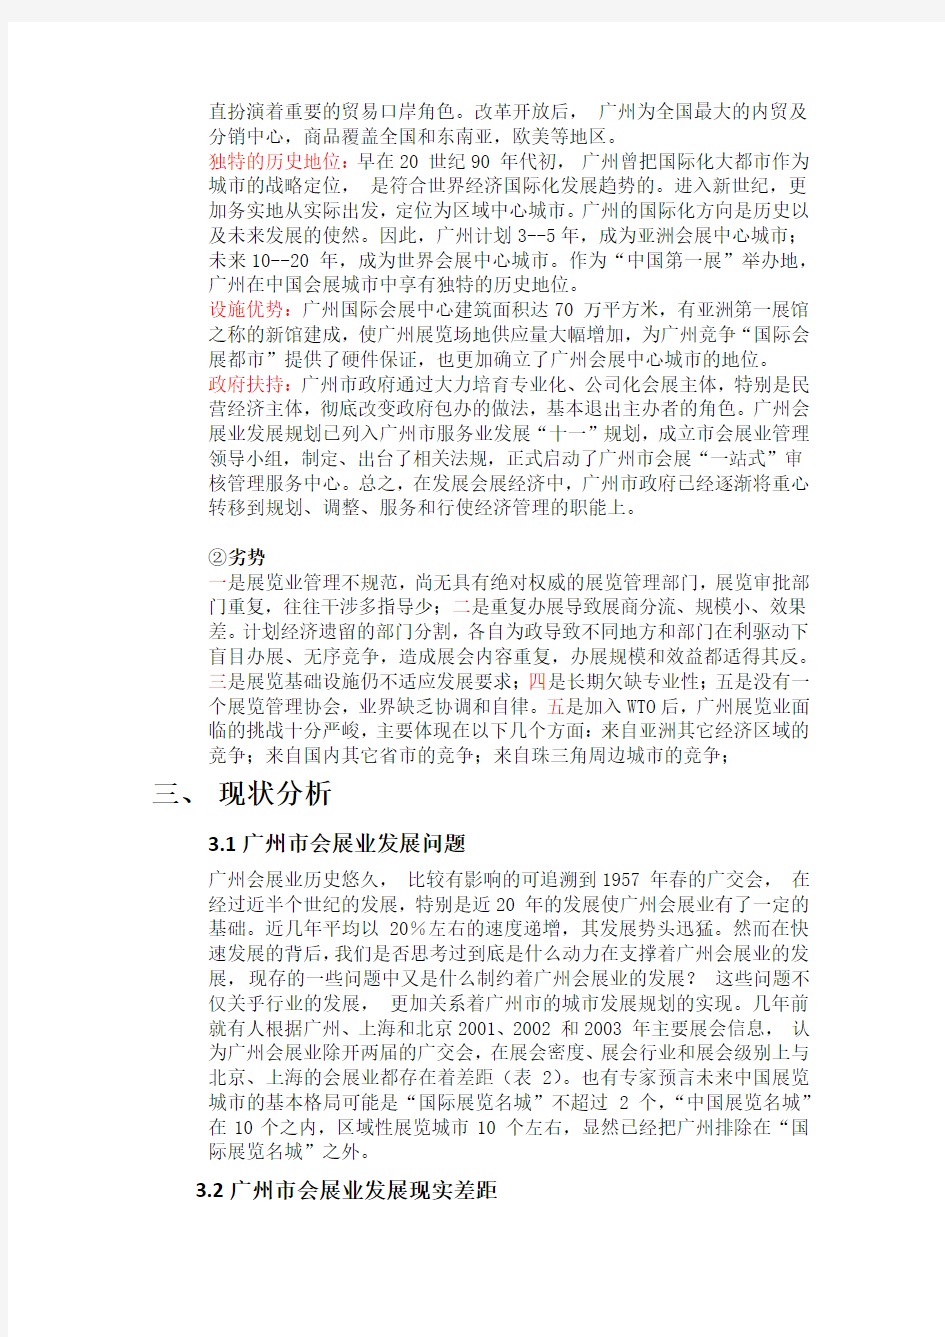 关于广州会展业发展现状的调查报告